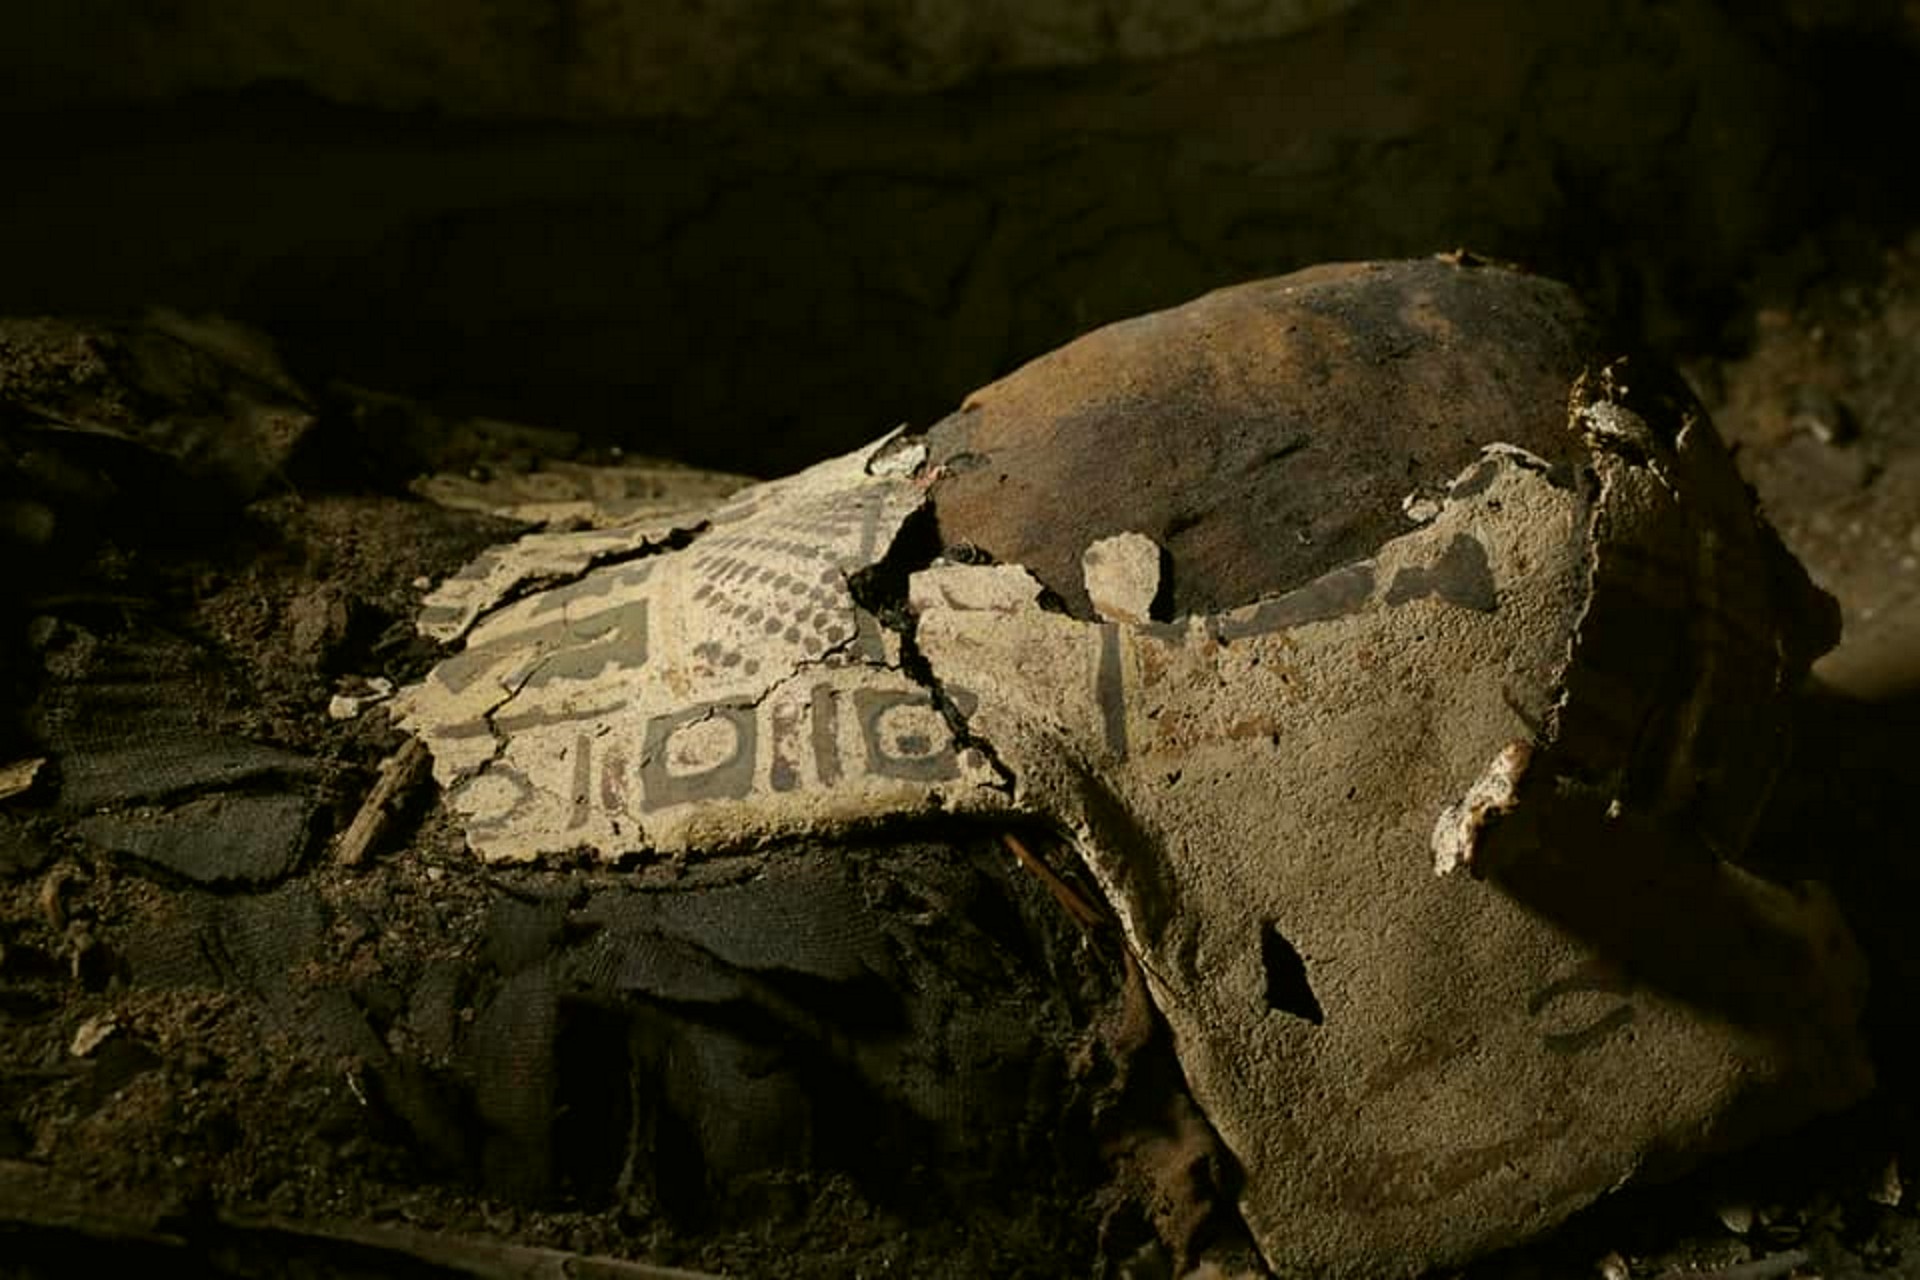 40 mummie, 12 di bambini. Immagini della prima scoperta archeologica del 2019 in Egitto